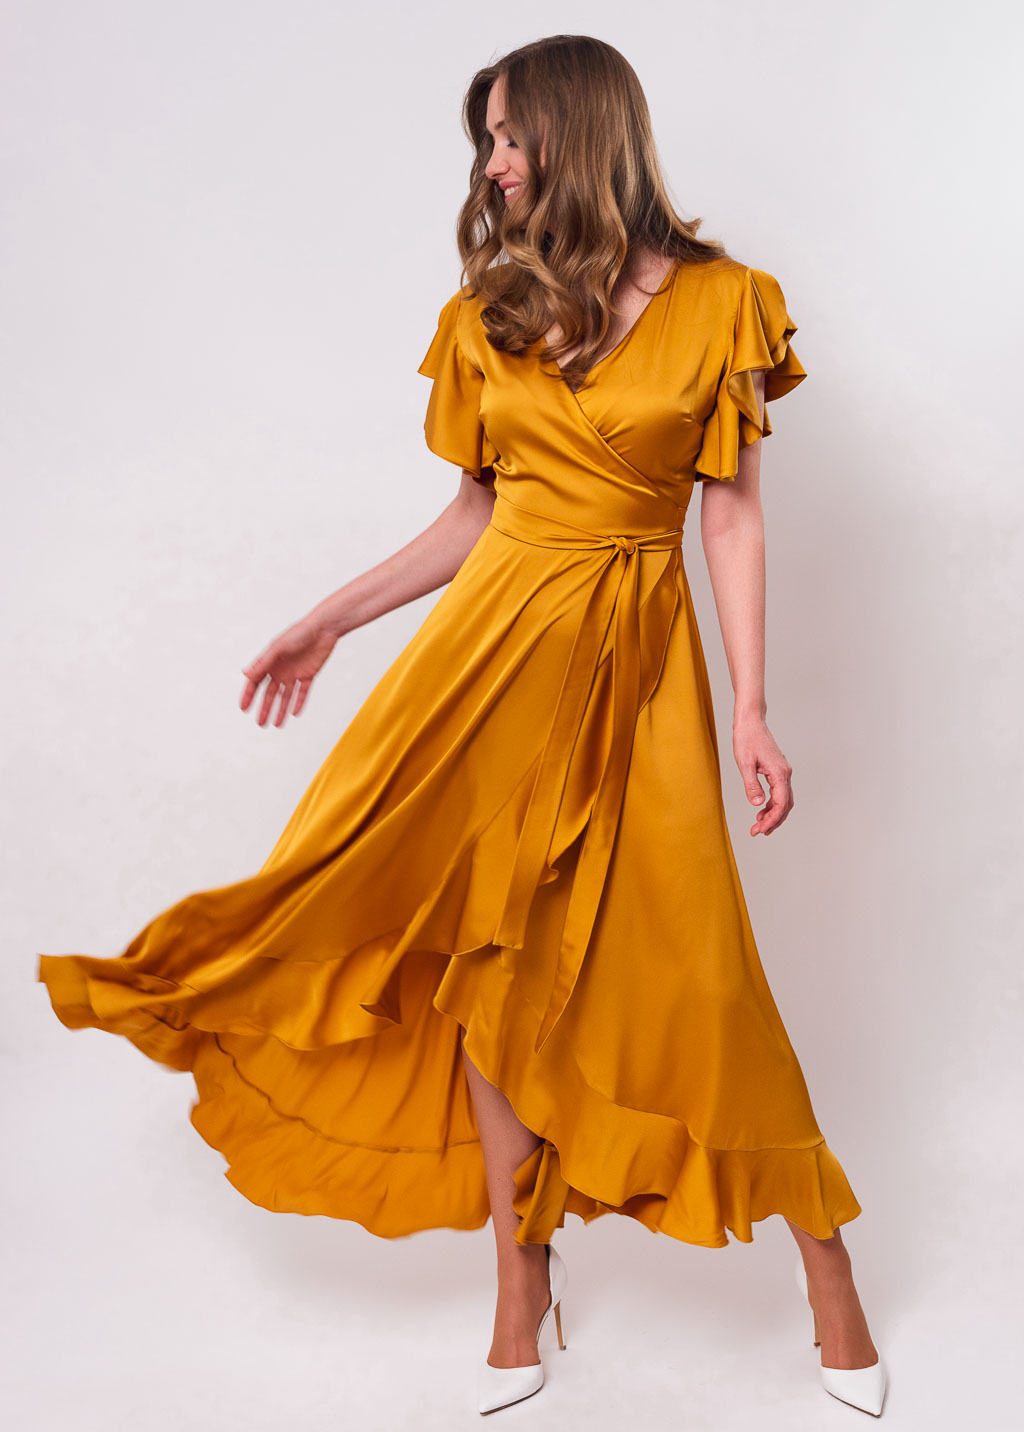 Gold wrap dress